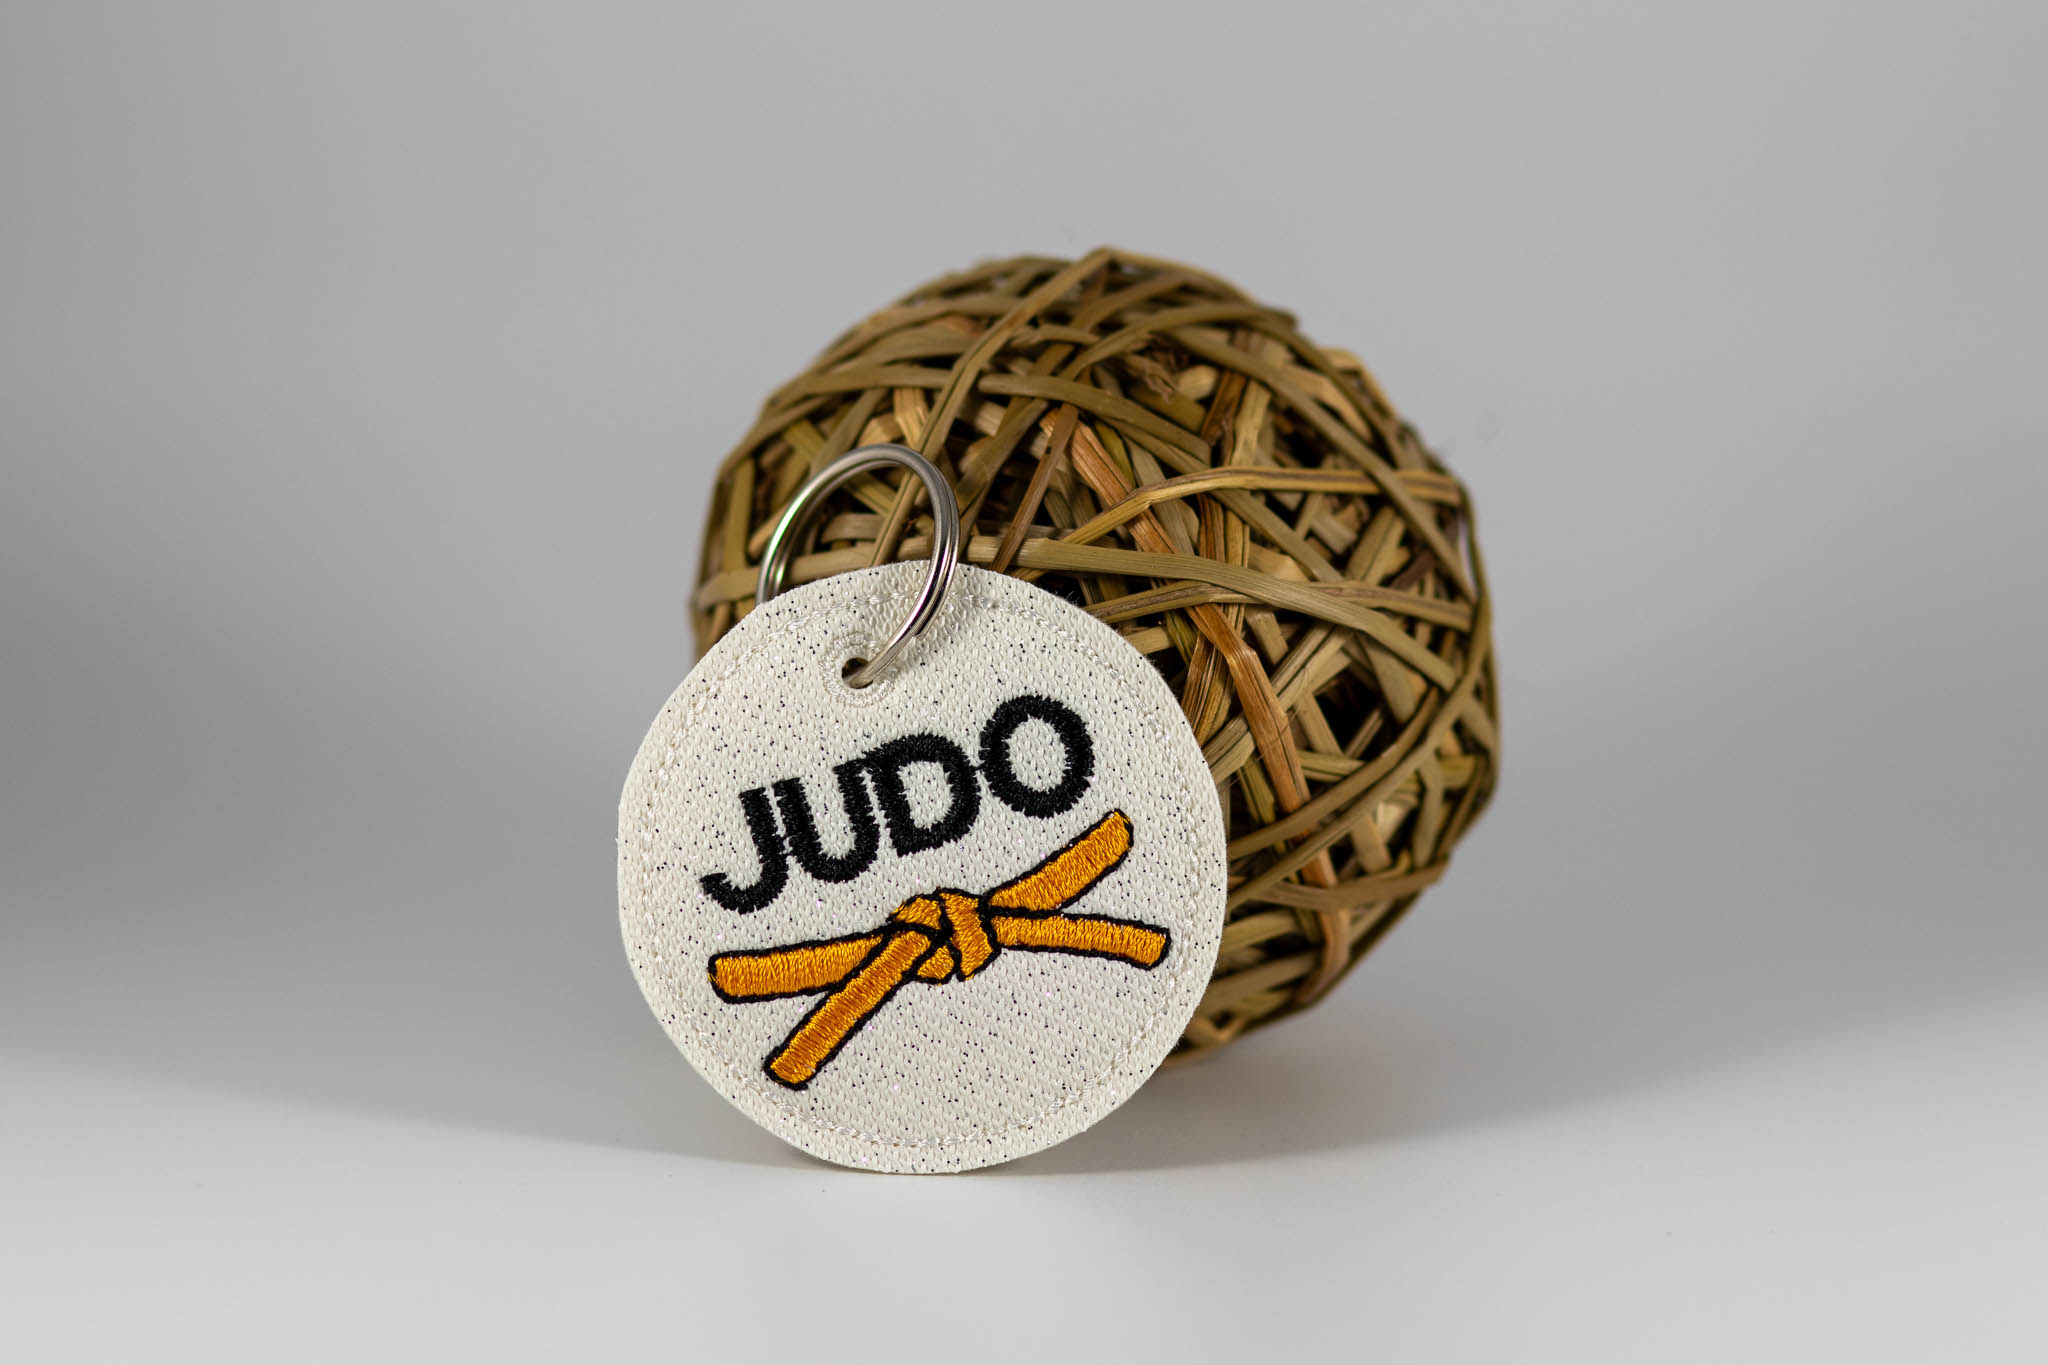 Kampfsportgürtel mit Schriftzug "Judo"